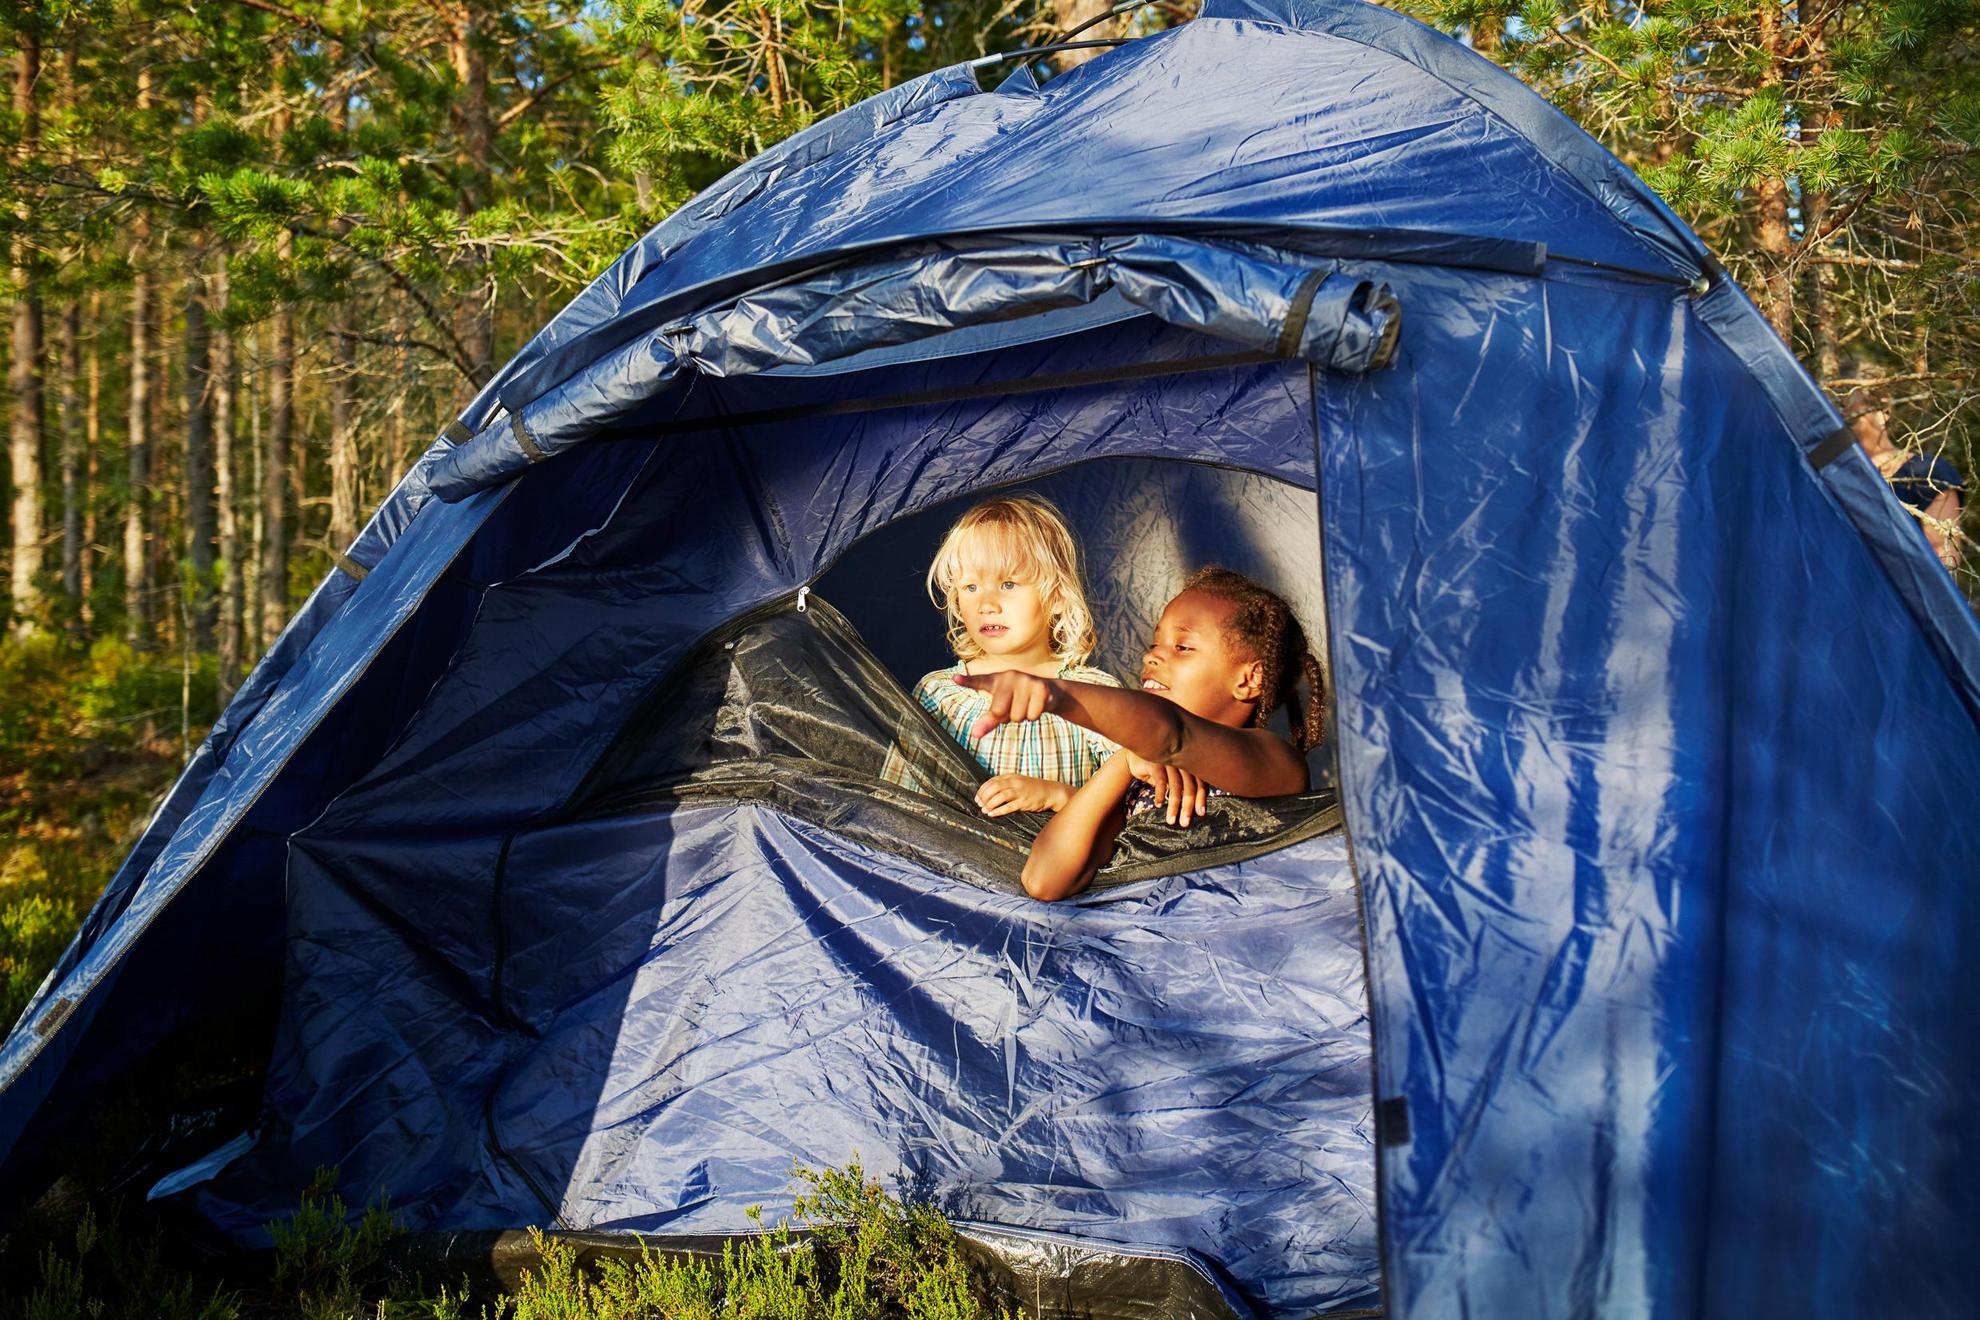 Twee kindjes kijken door de rits van een blauwe tent die in een bosrijke omgeving staat.